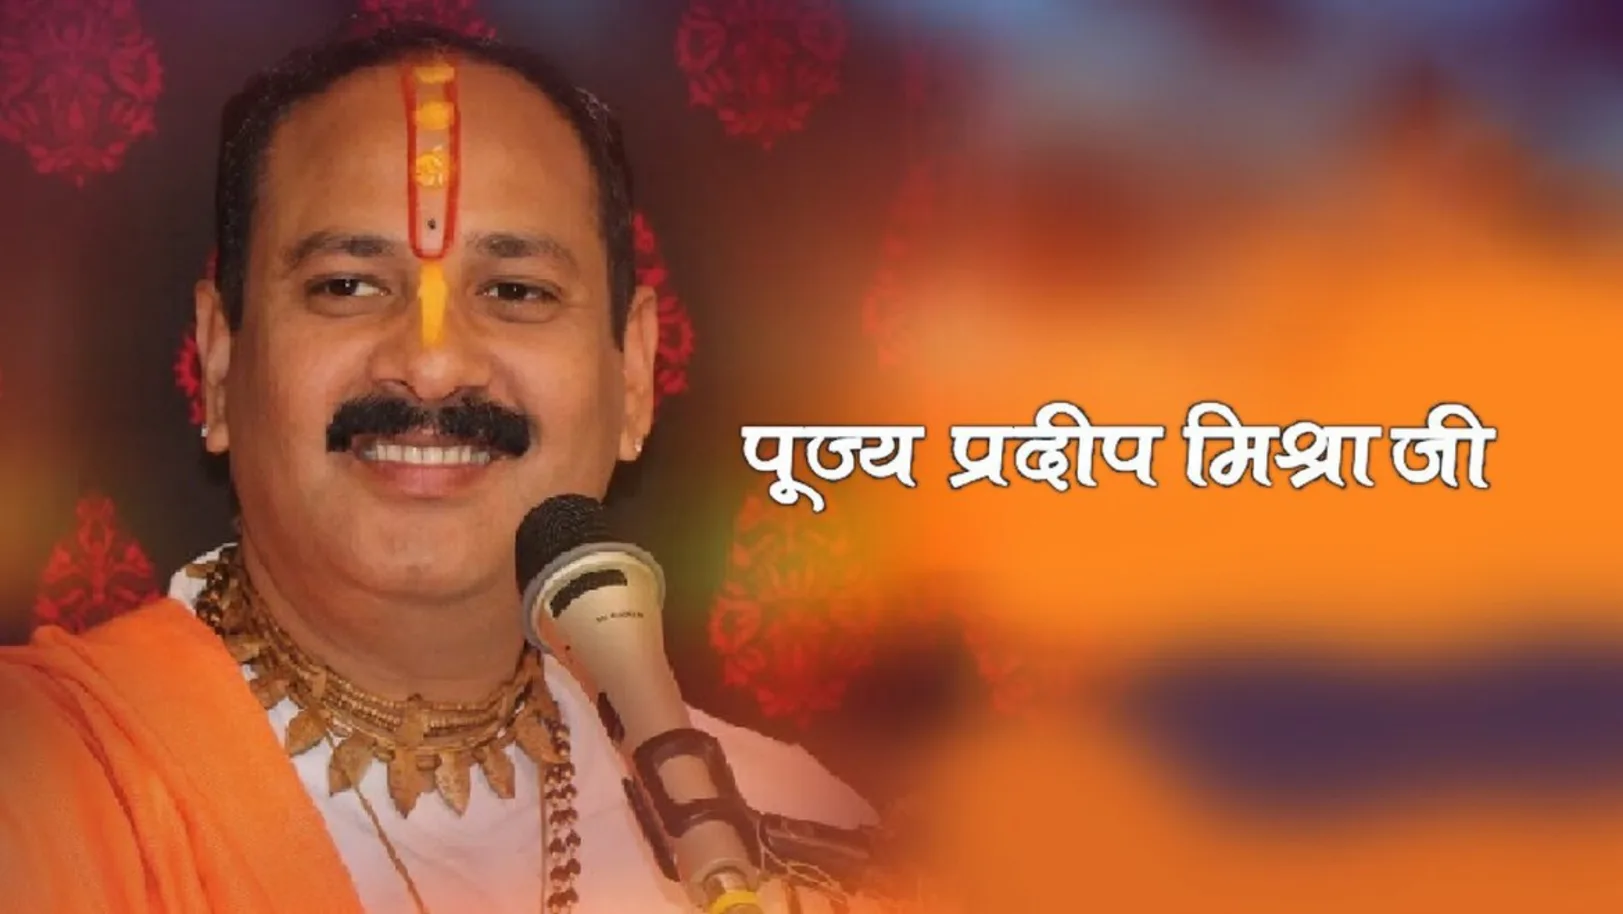 Pujya Pradeep Mishra Ji Streaming Now On Aastha